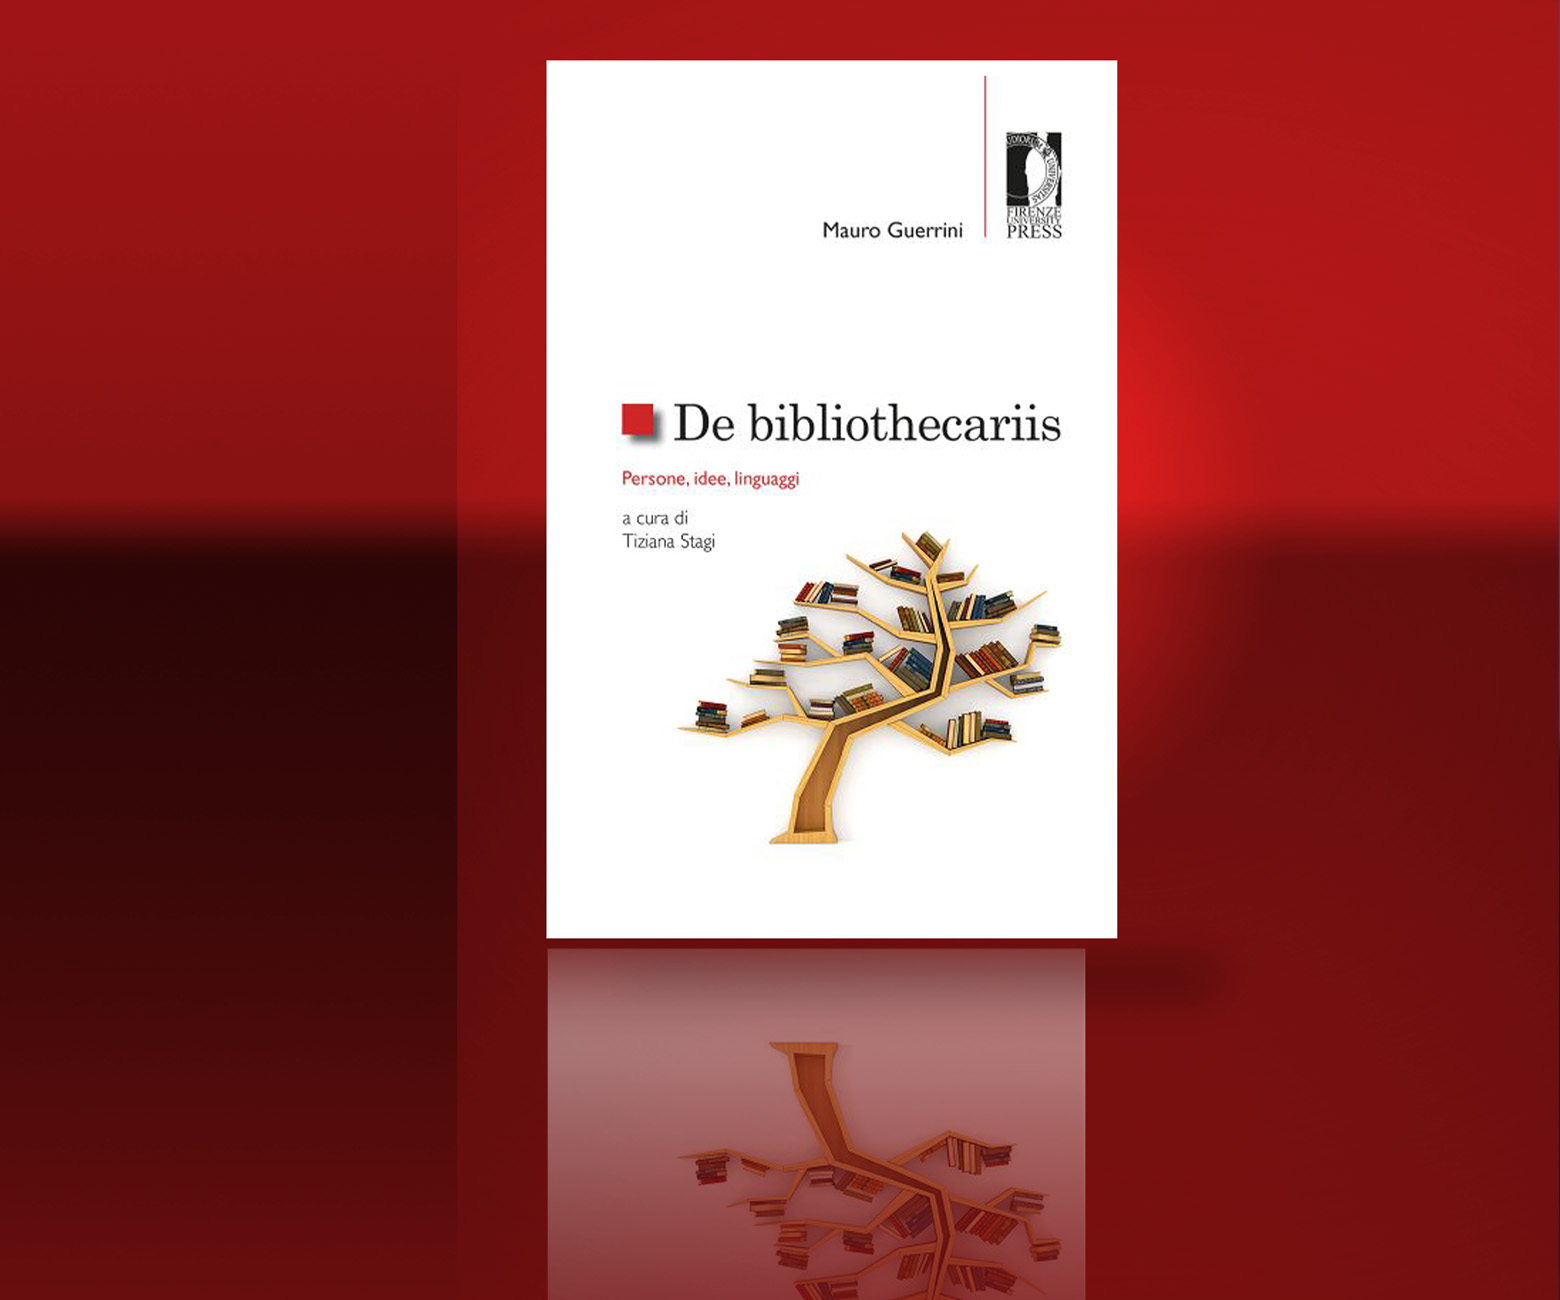 Presentazione del libro di Mauro Guerrini «DE BIBLIOTEHECARIIS - Persone, idee, linguaggi» a cura di Tiziana Stagi